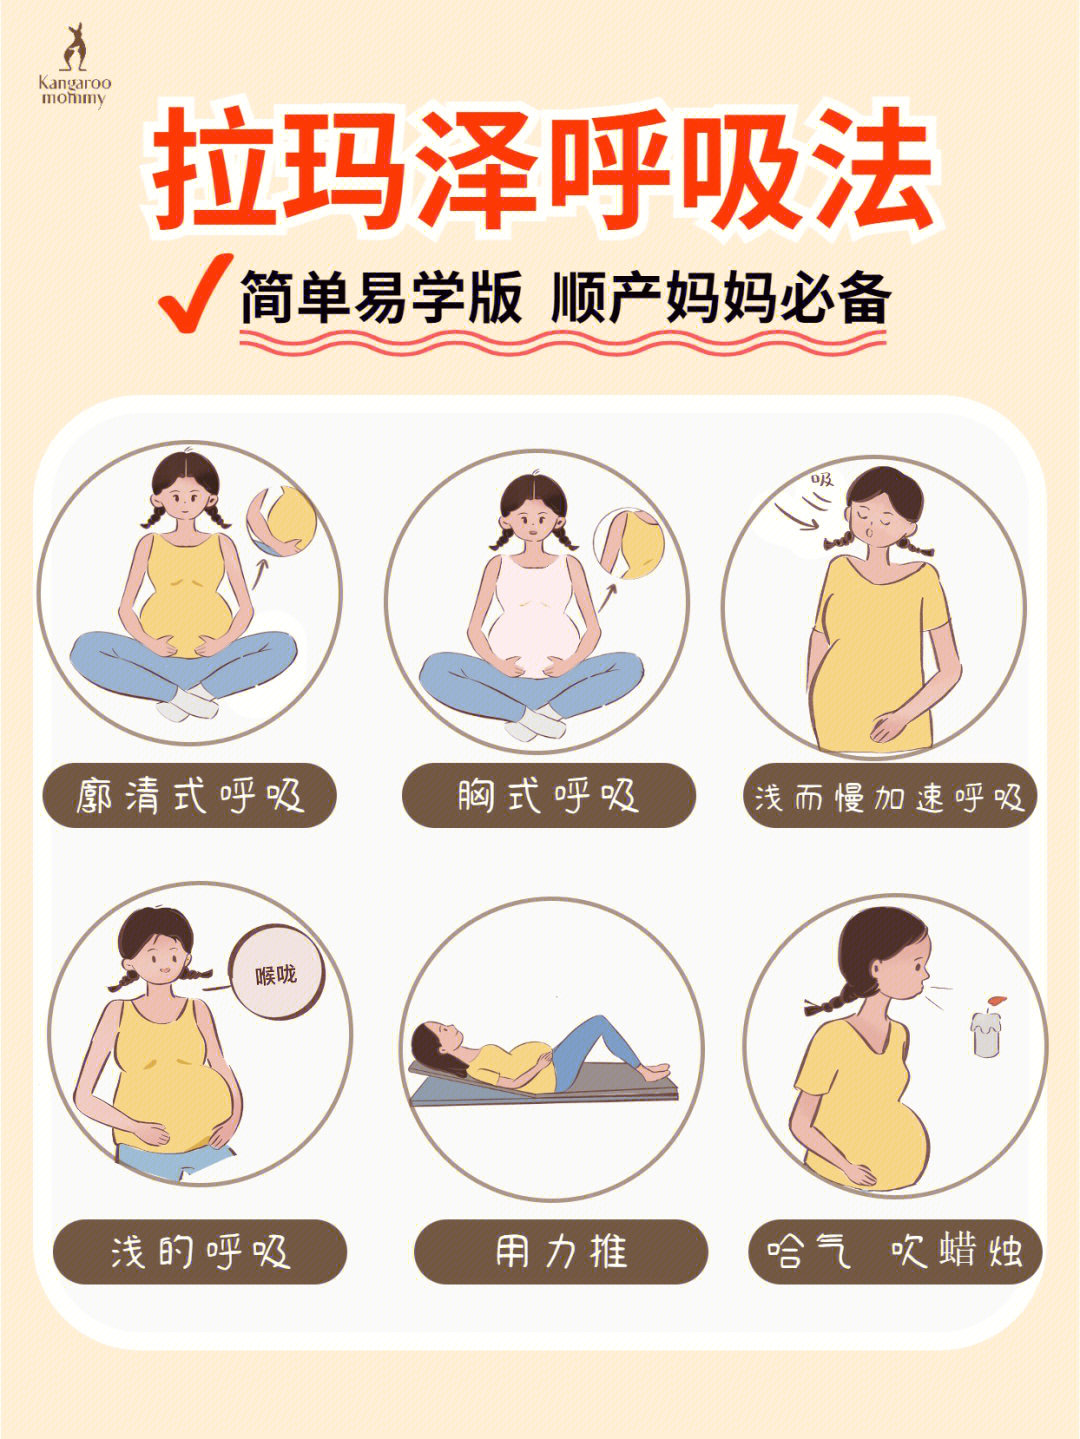 福袋真心建议各位想顺产的孕妈学会拉玛泽呼吸法,它可以:73缓解分娩